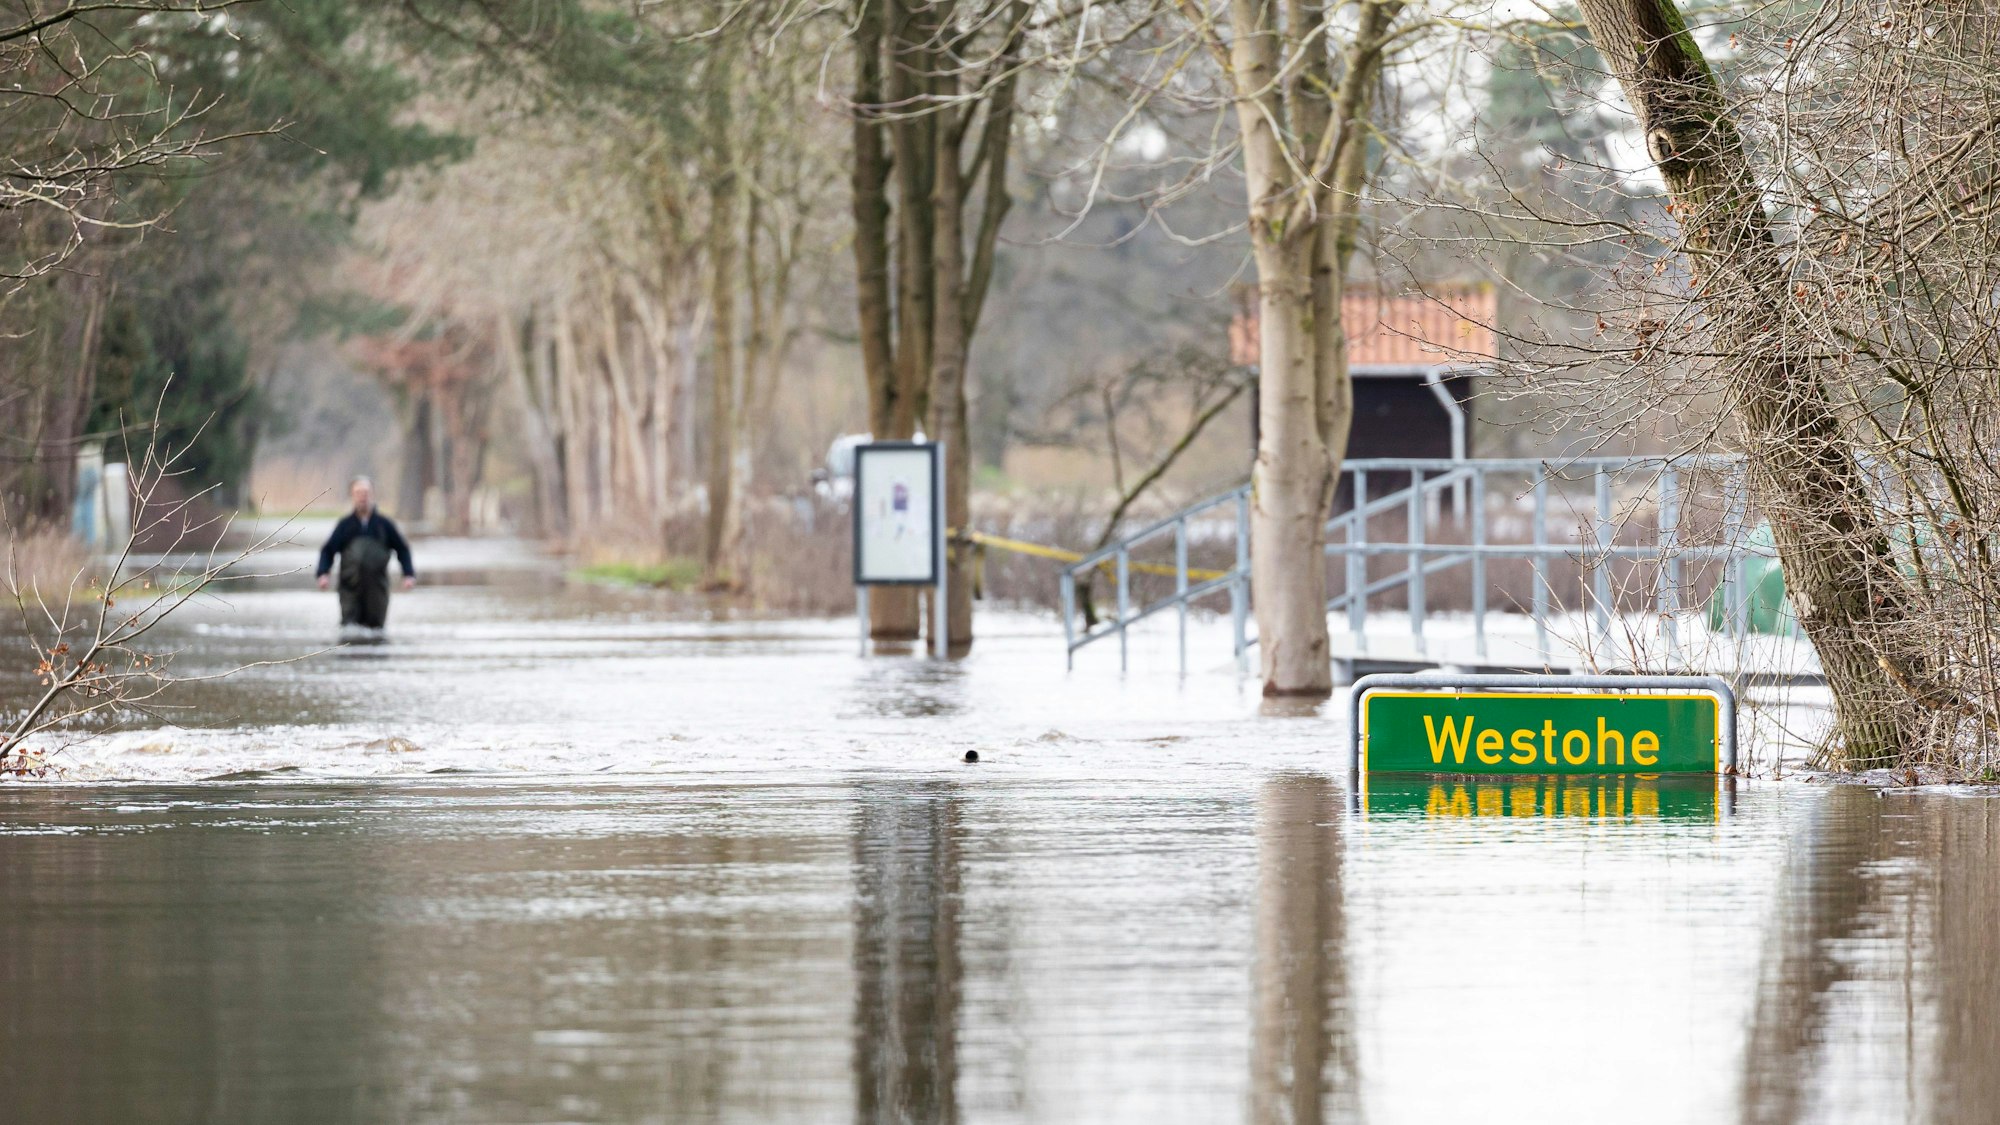 Eine Person läuft auf einer überfluteten Straße in der Siedlung Westohe der Gemeinde Winsen (Aller) im Landkreis Celle.